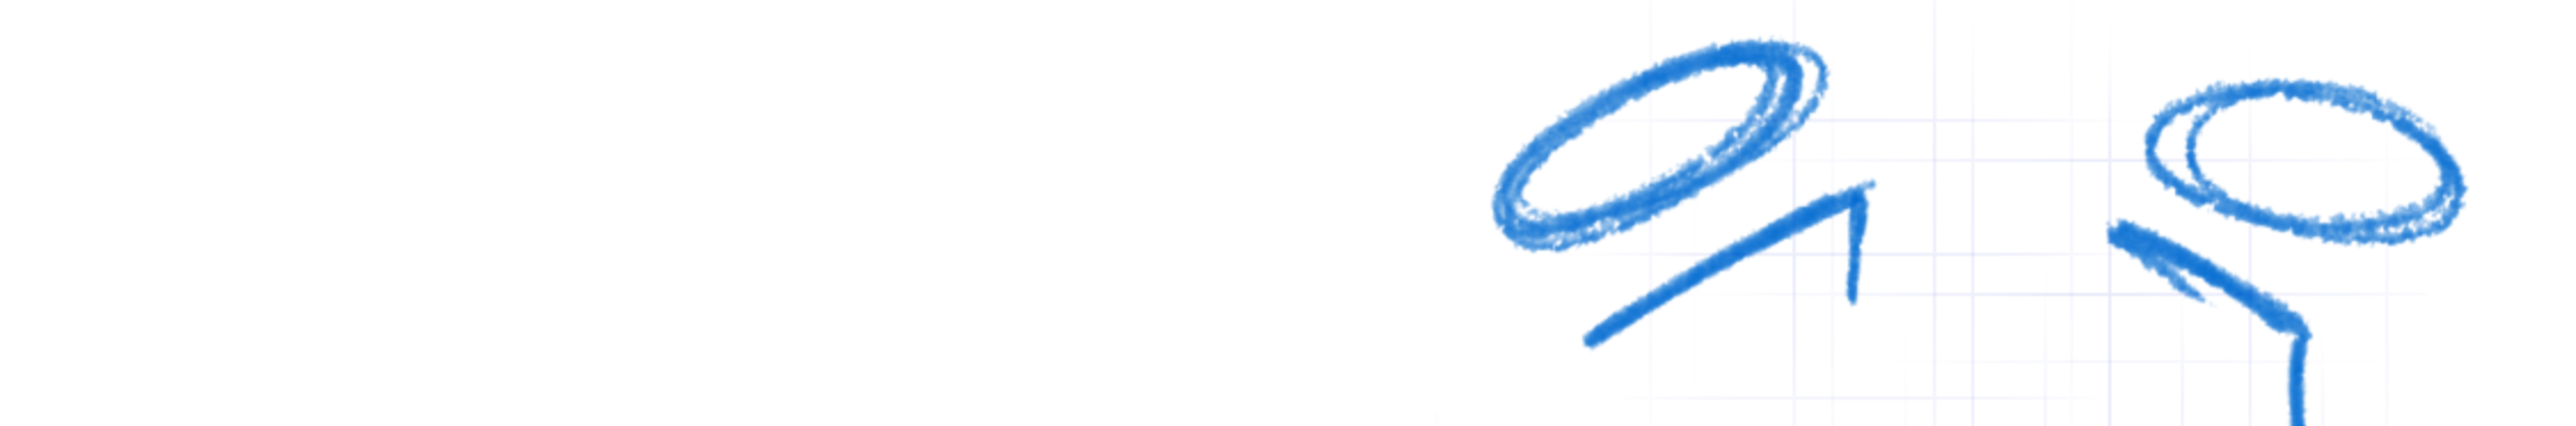 vav-logo